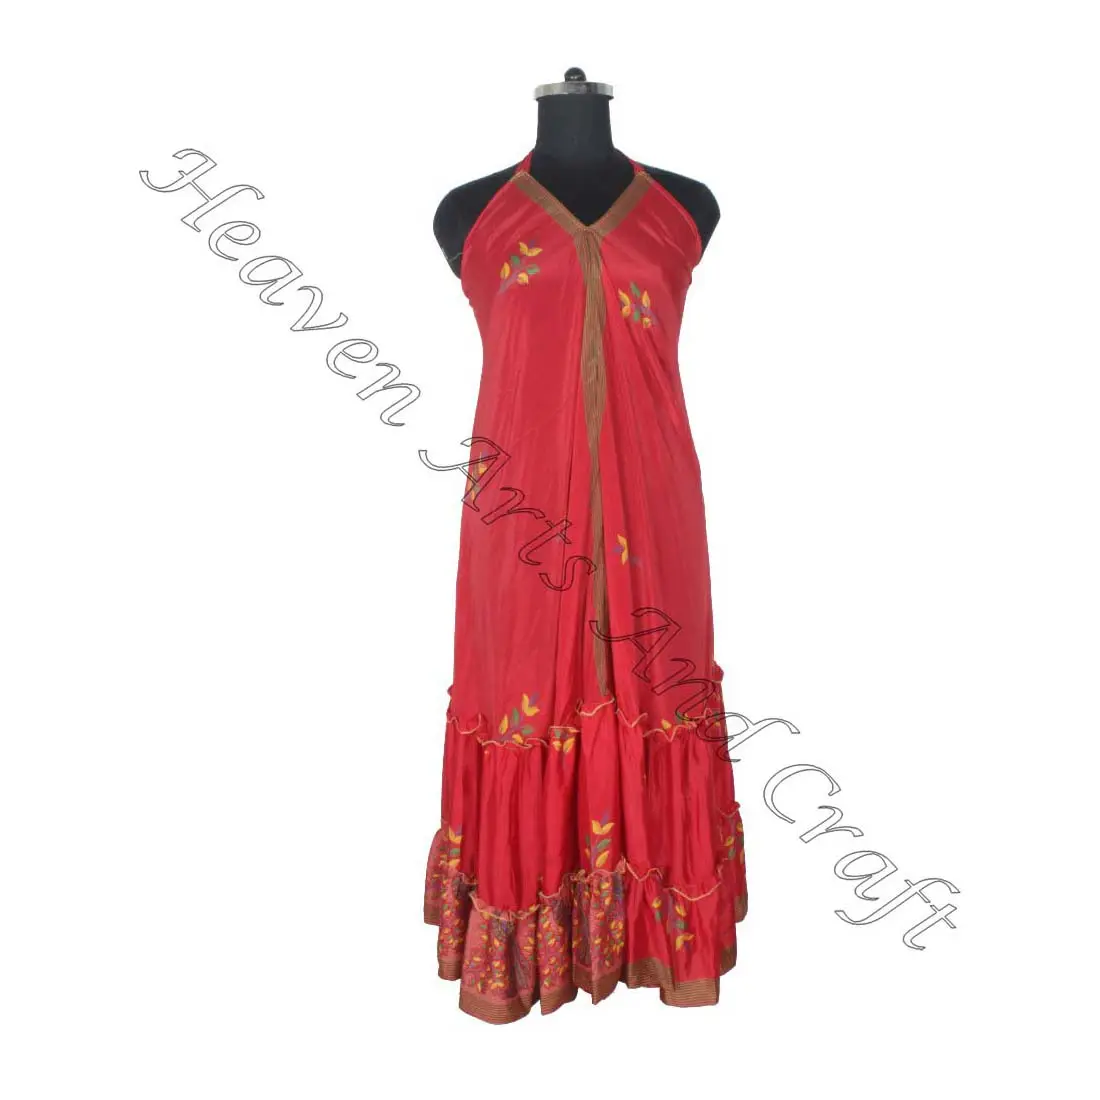 SD020 الساري / الساري / شري ملابس هندية وباكستانية من الهند هيبي بوهو مصنع وصانع ملابس النساء الساري الكلاسيكي